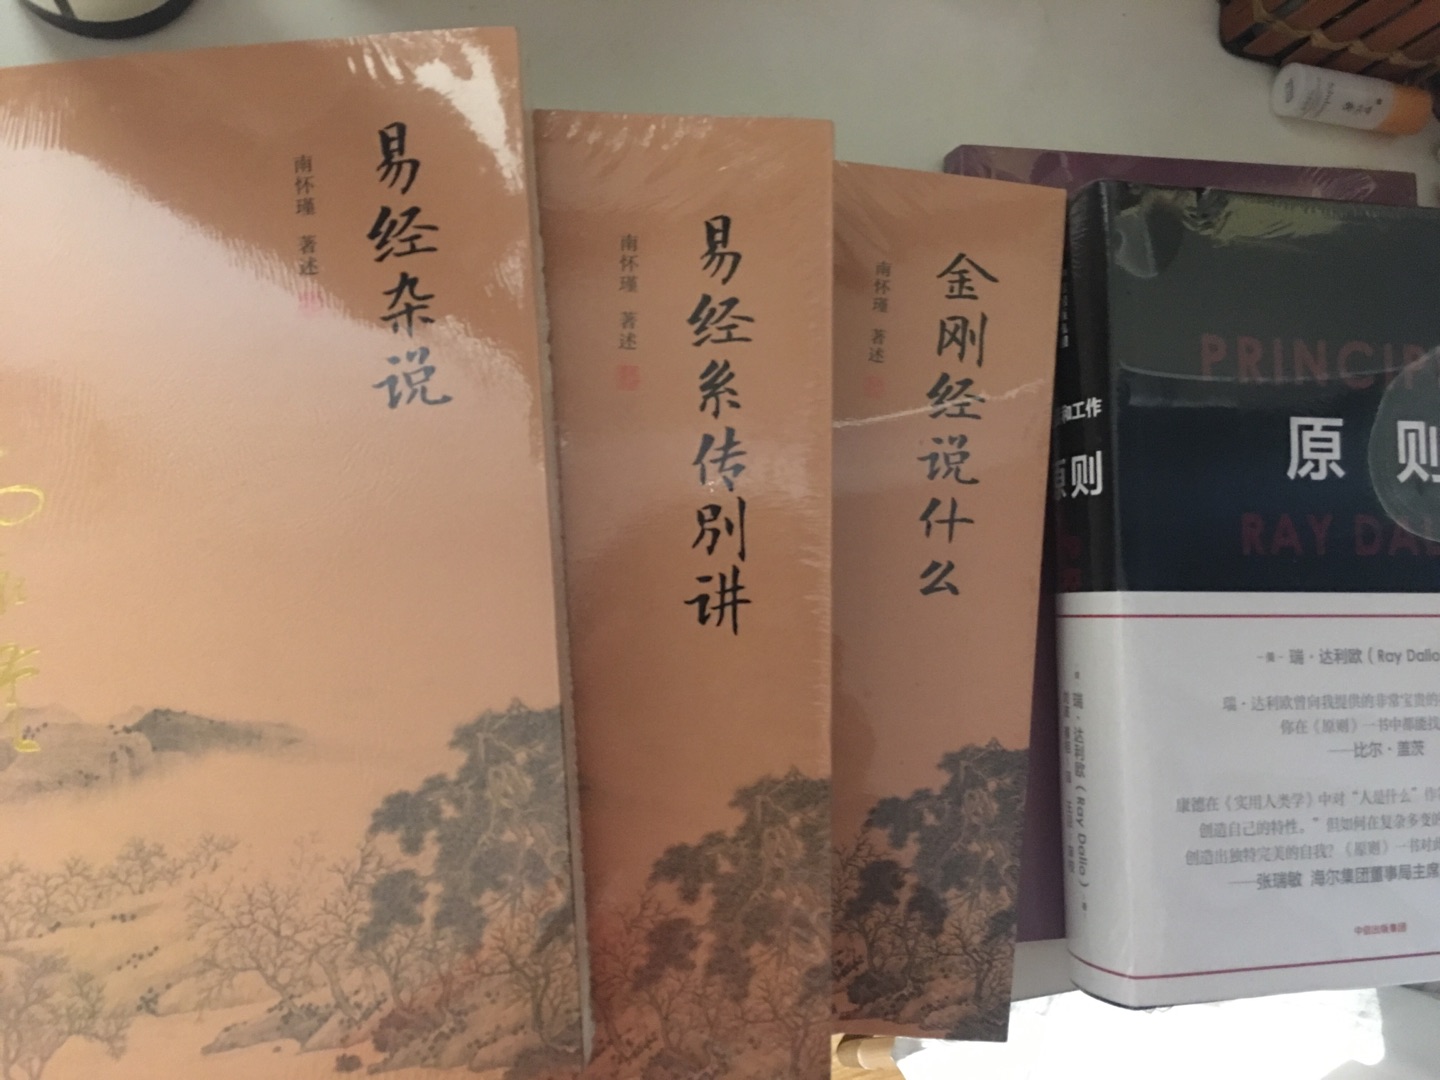 南怀瑾大师的作品，中国著名的古书之一，多研究一下有益，好好研读学习，定有长进，不错，推荐